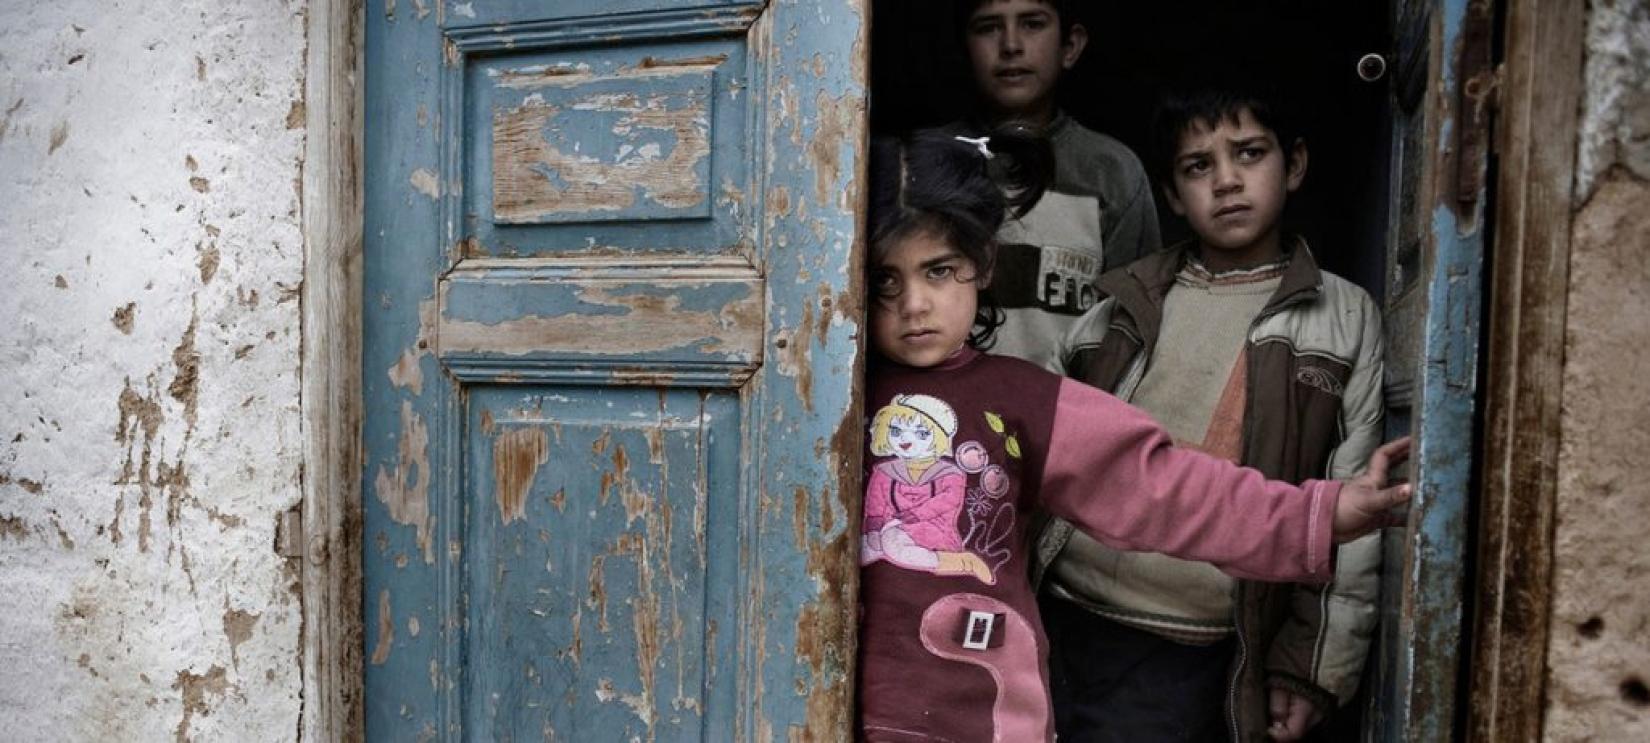 Crianças se abrigam em casa em meio ao fogo cruzado em cidade síria afetada pelo conflito. Foto: UNICEF/Romenzi